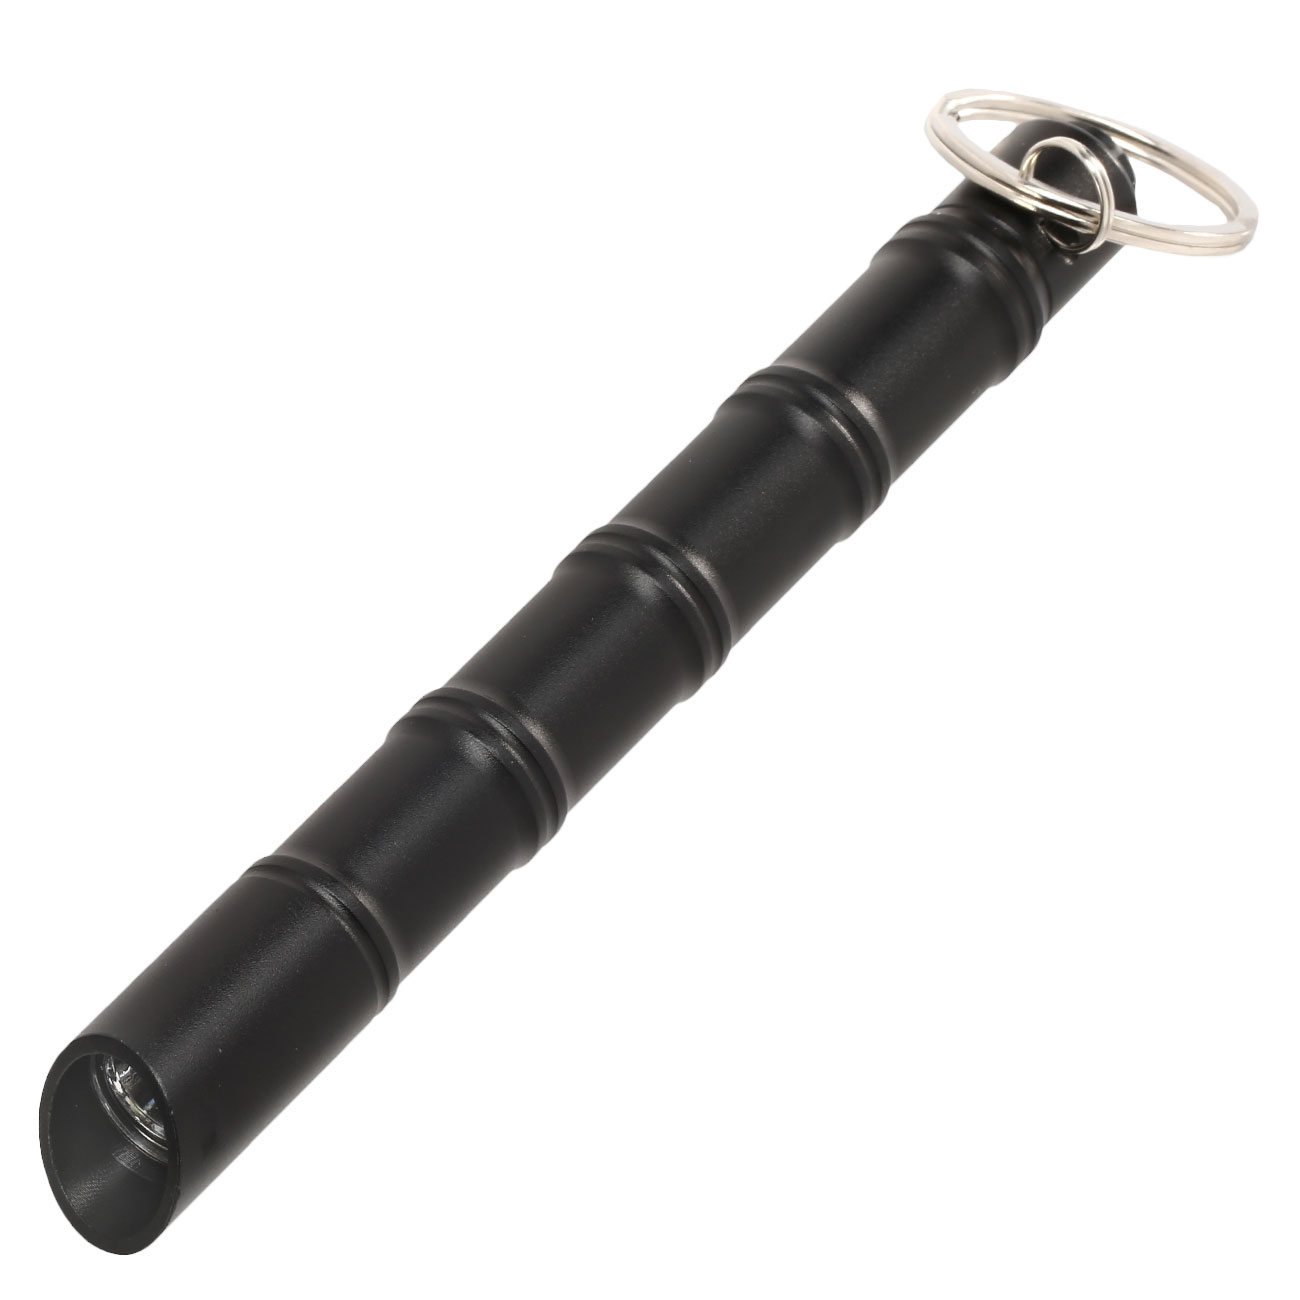 Kubotan Light Defender mit integrieter LED-Taschenlampe und Schlüsselring schwarz Bild 1